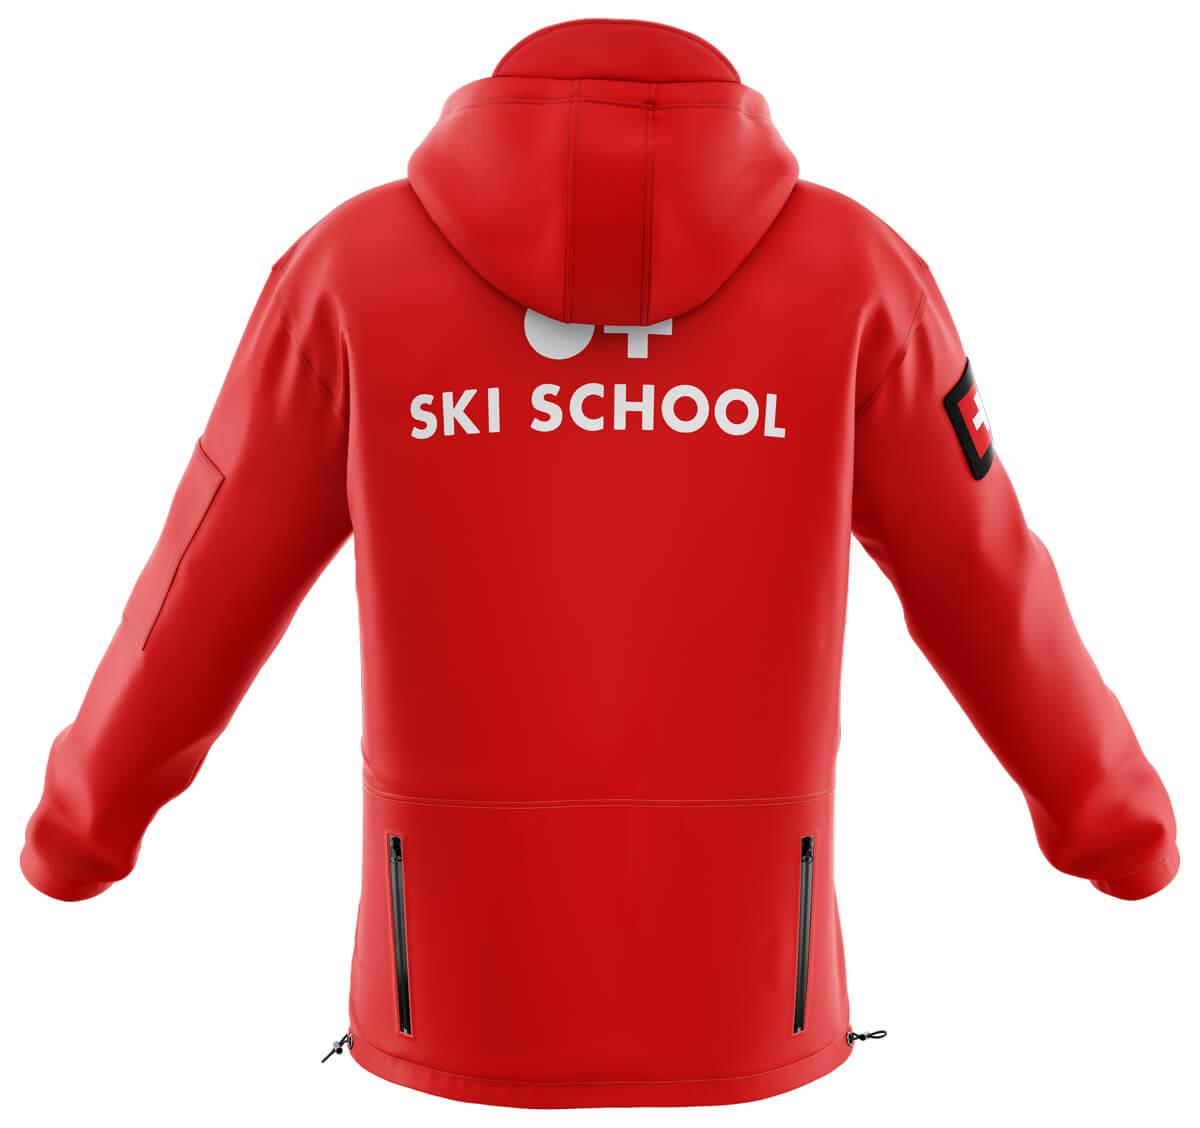 Ski School Jacket back